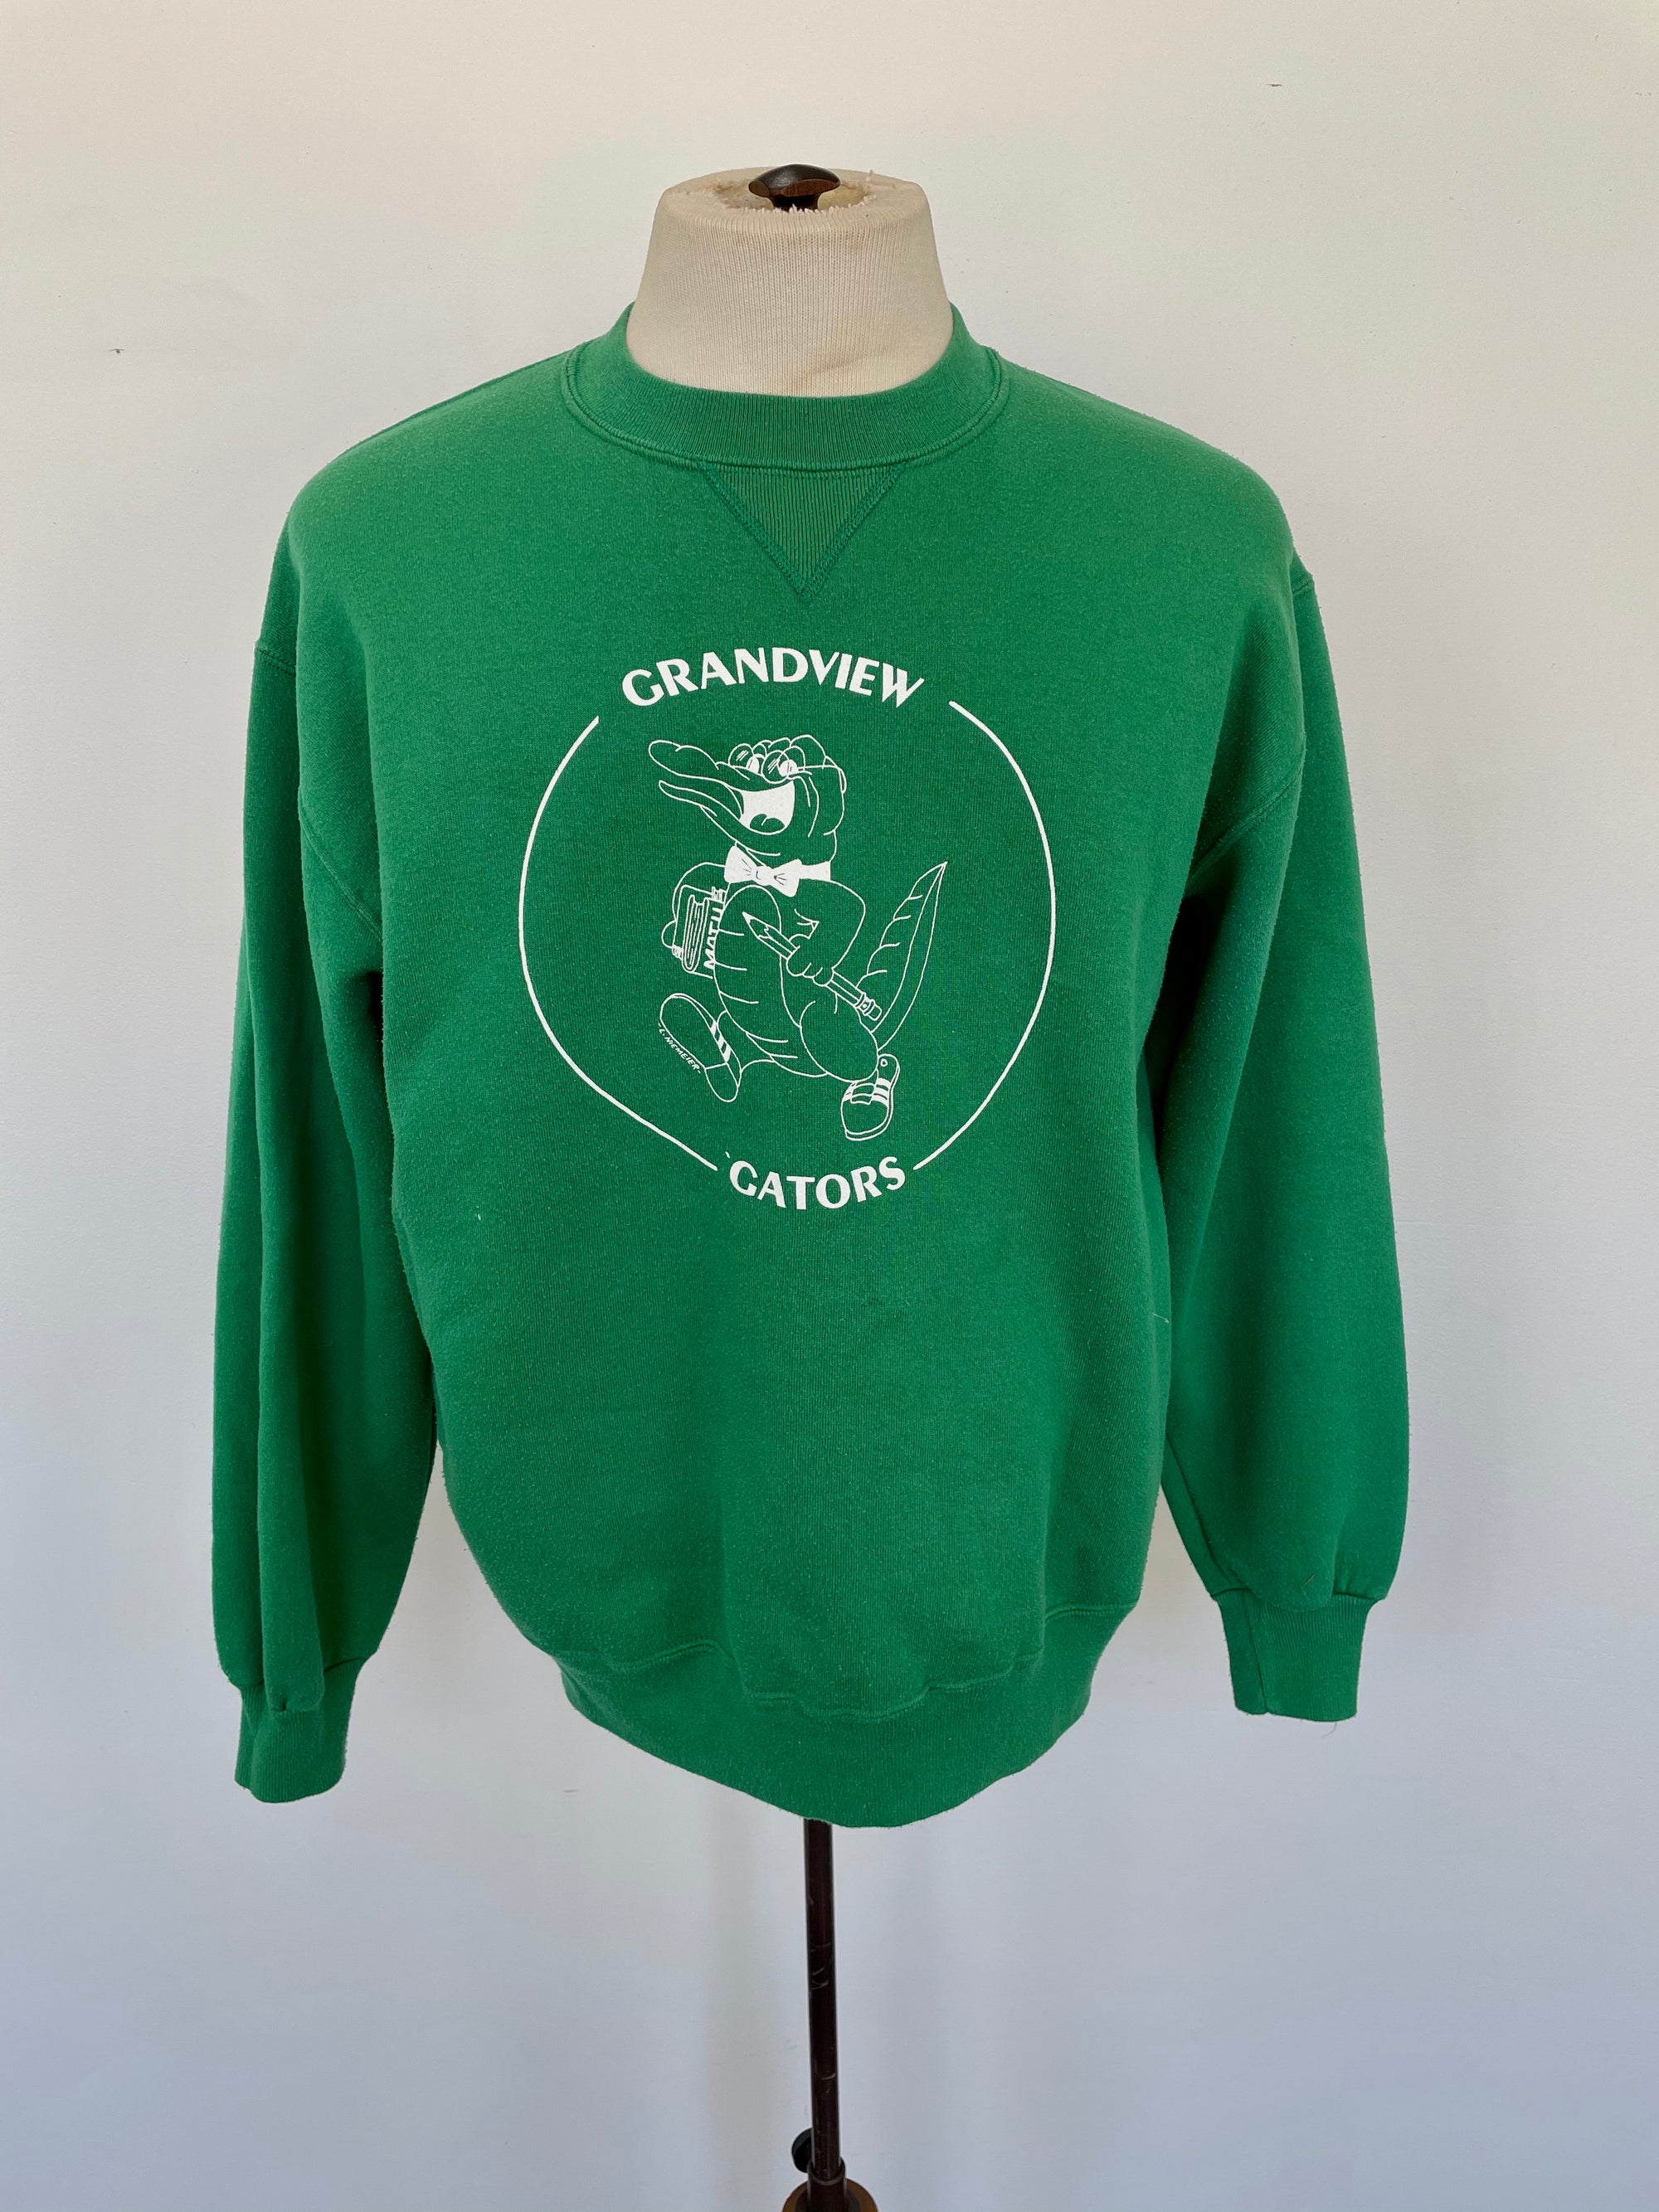 Vintage "Grandview Gators" Sweatshirt